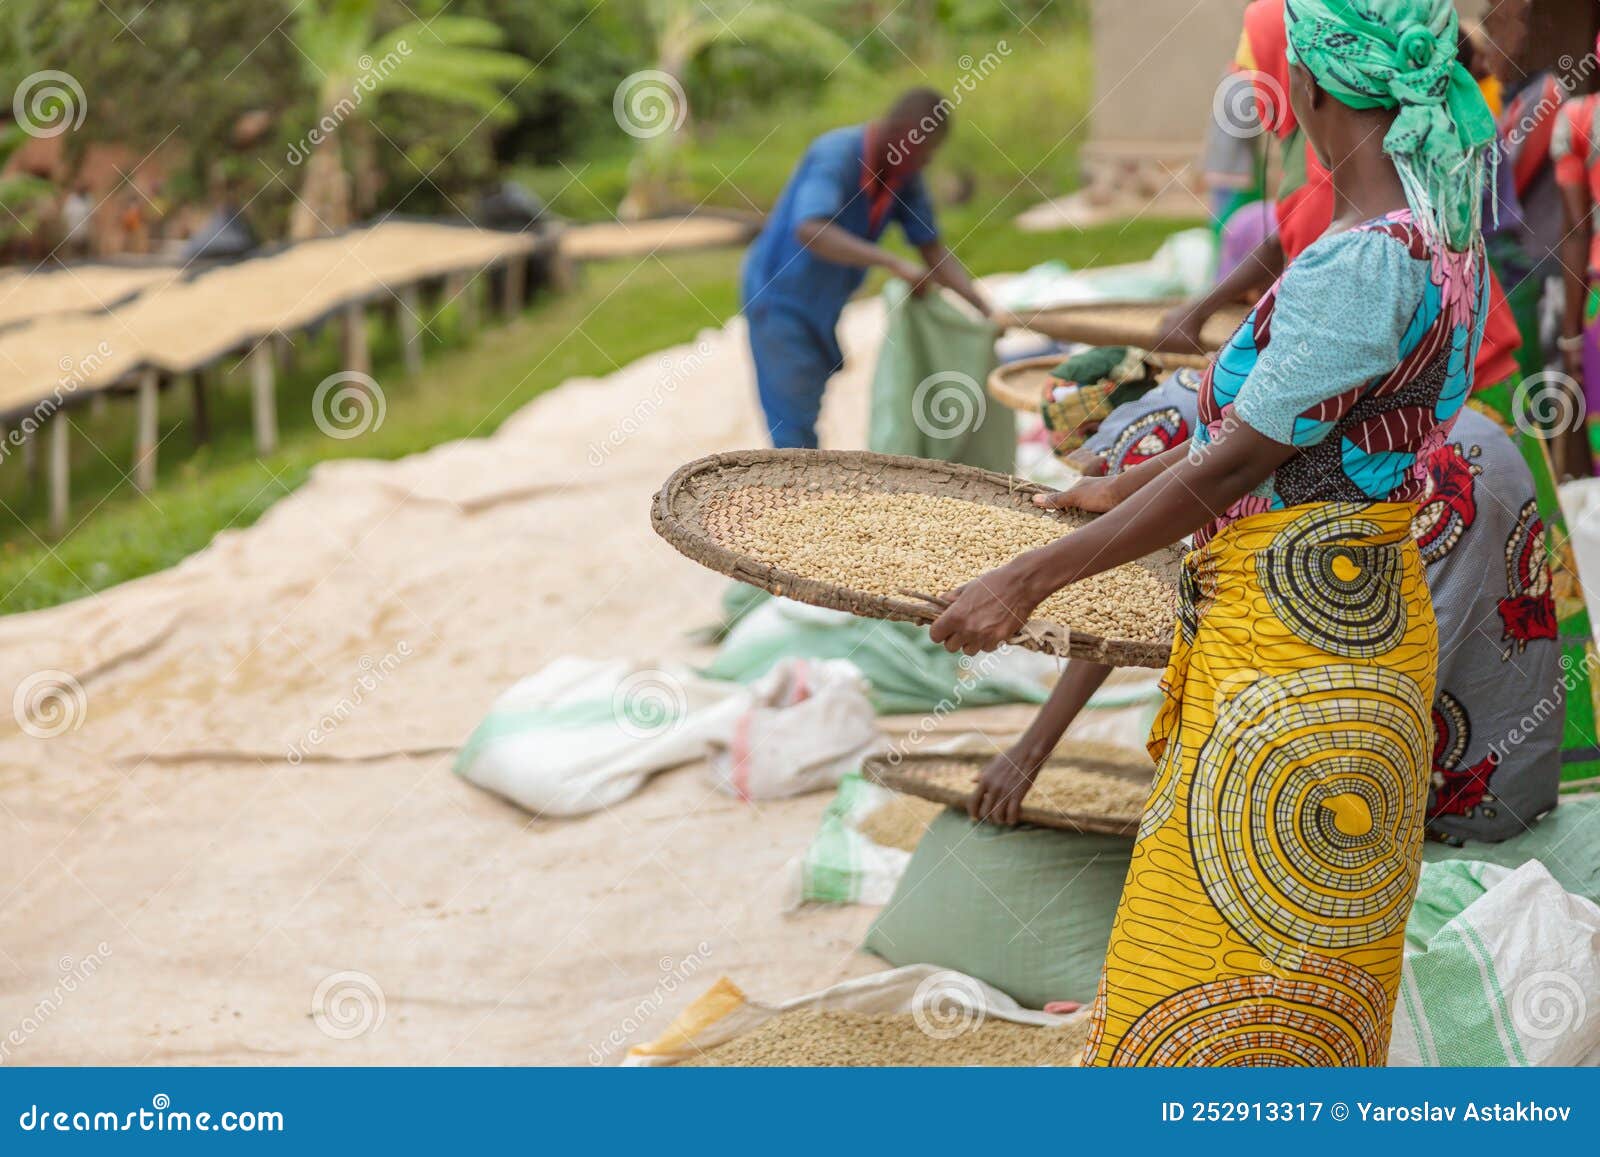 female workers sorting through coffee cherries in region of rwanda